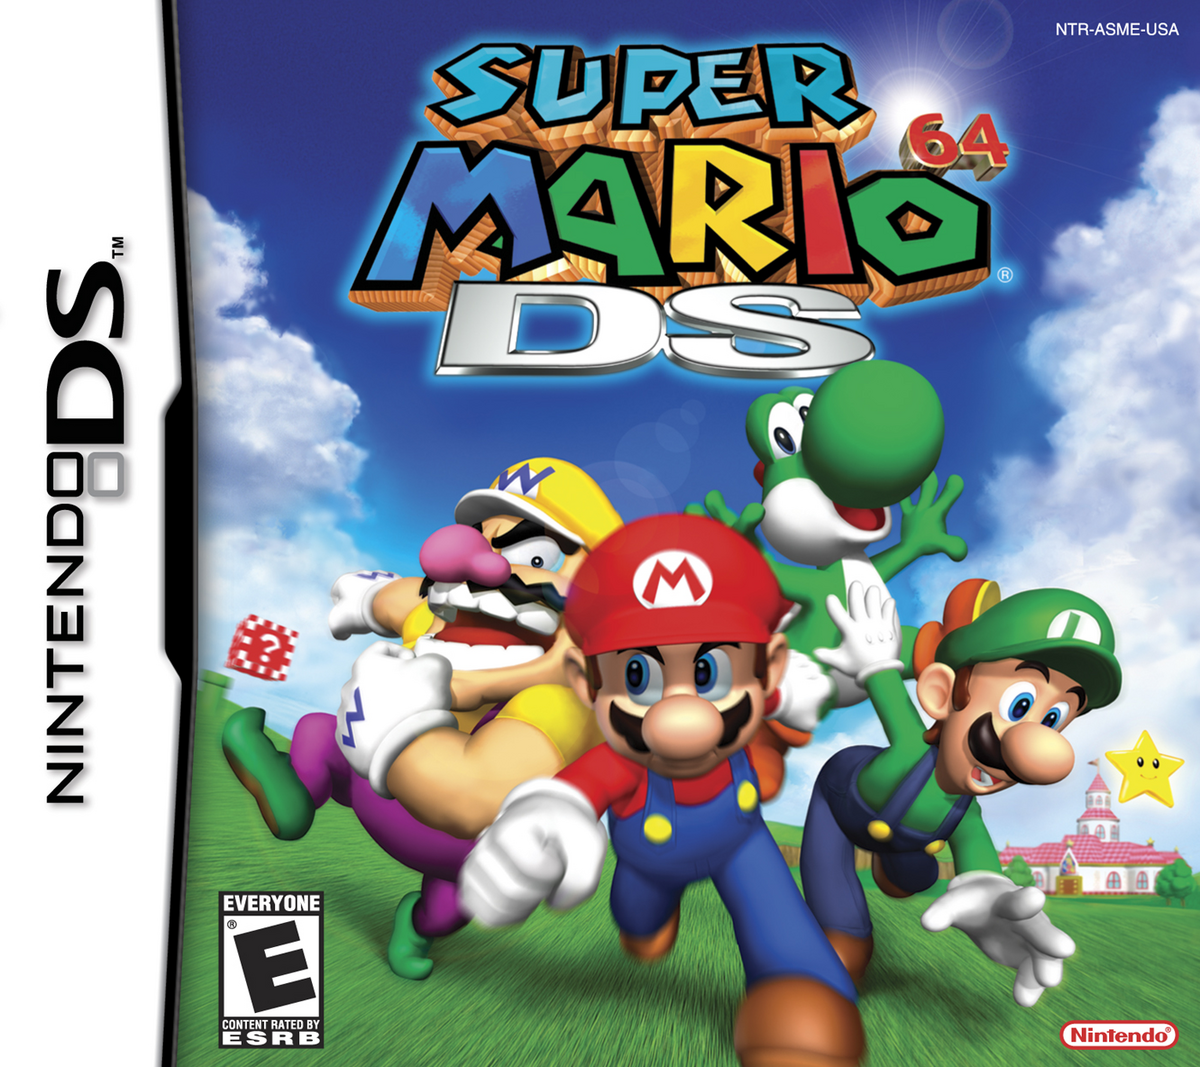 Wii U receberá jogos do Nintendo DS no Virtual Console